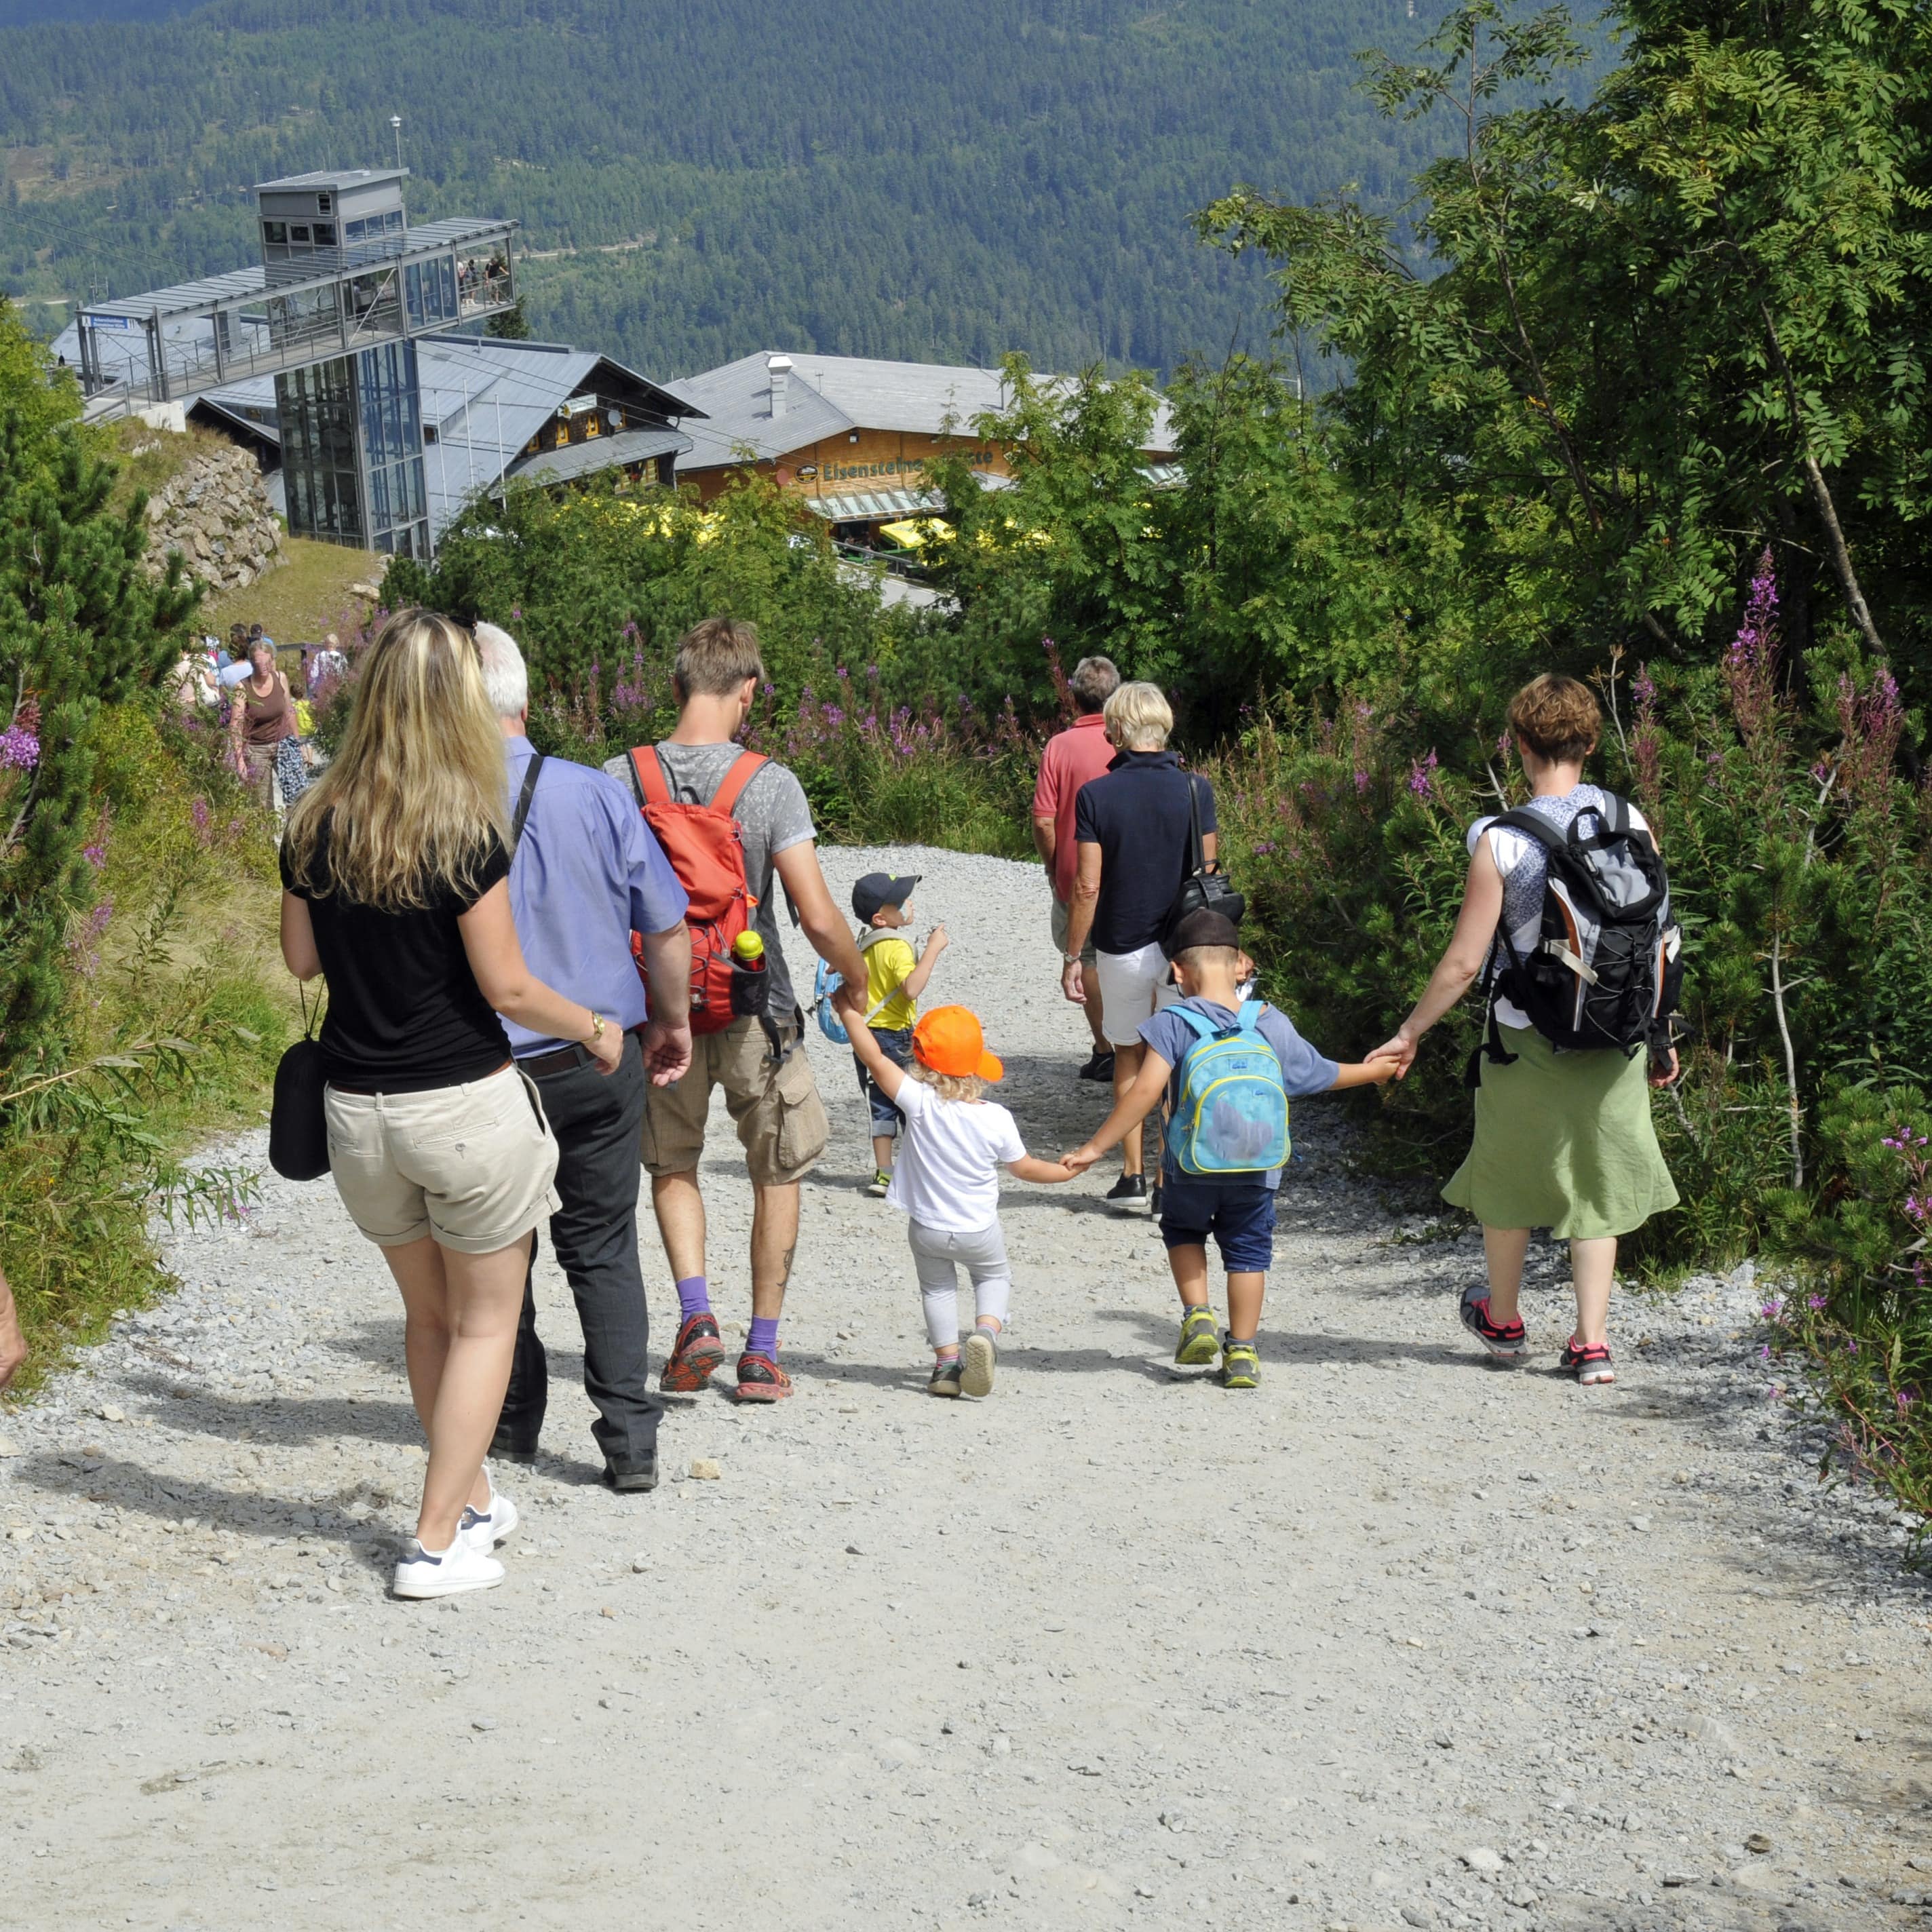 Rückenansicht: Eine Familie mit Kindern und weitere Personen auf einem Wanderweg am Großen Arber.